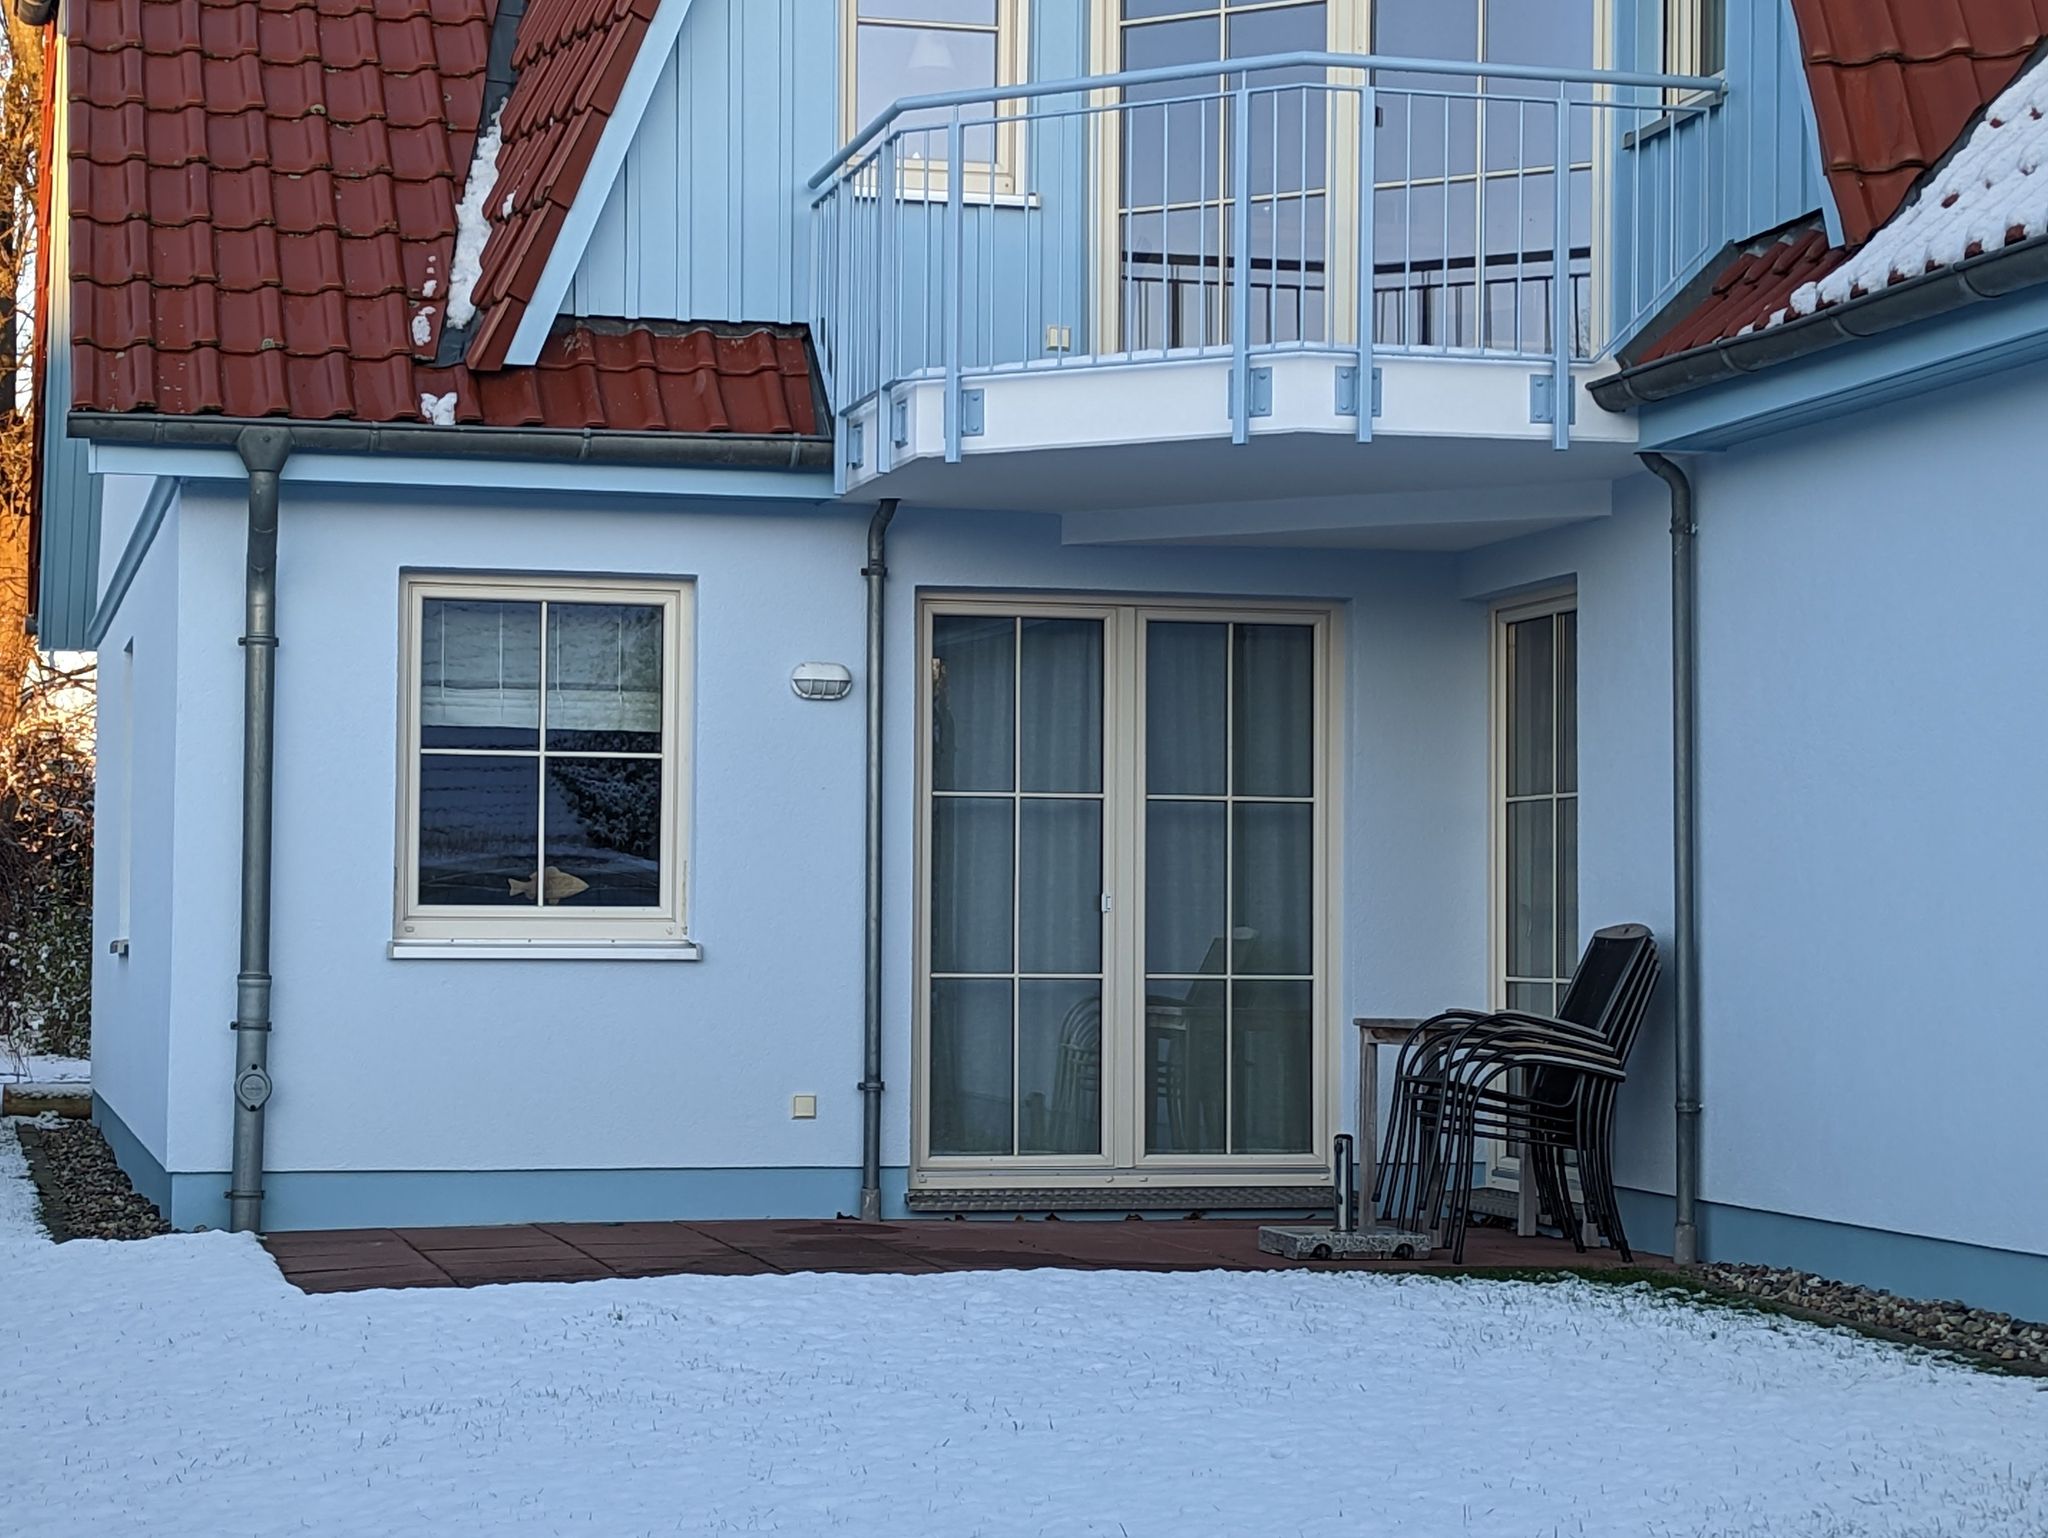 Mein Ostseeferienhaus Ferienhäuser Ostsee von privat mieten gute Bewertung